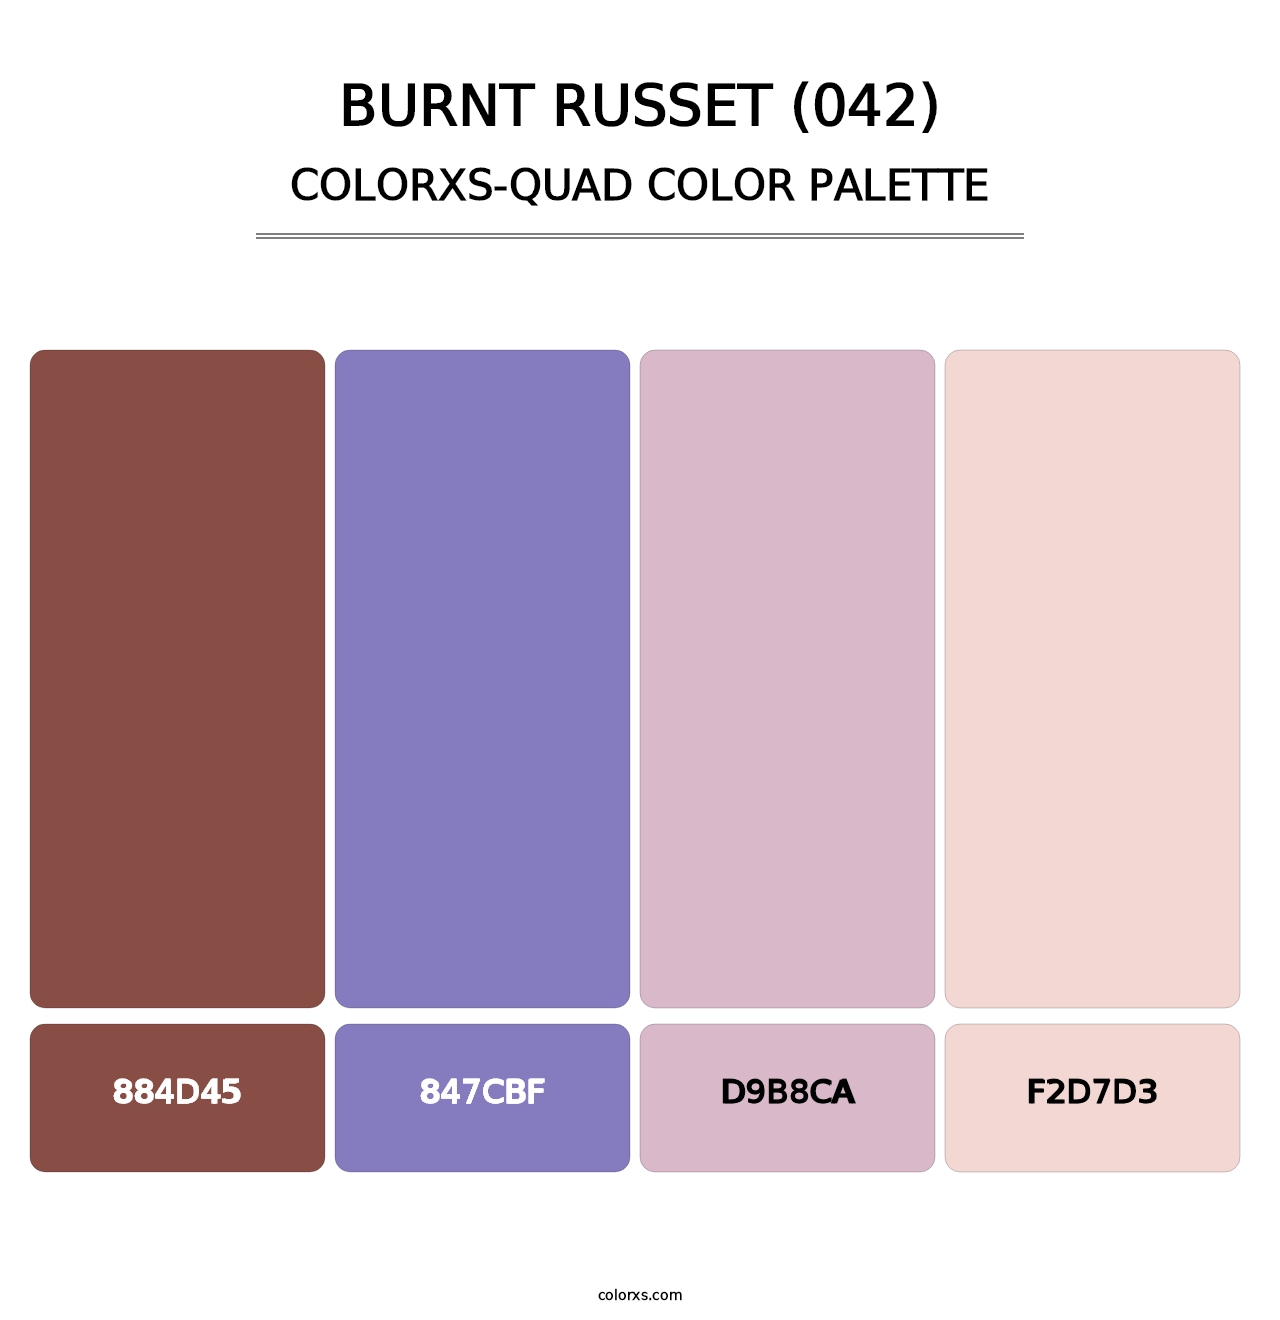 Burnt Russet (042) - Colorxs Quad Palette